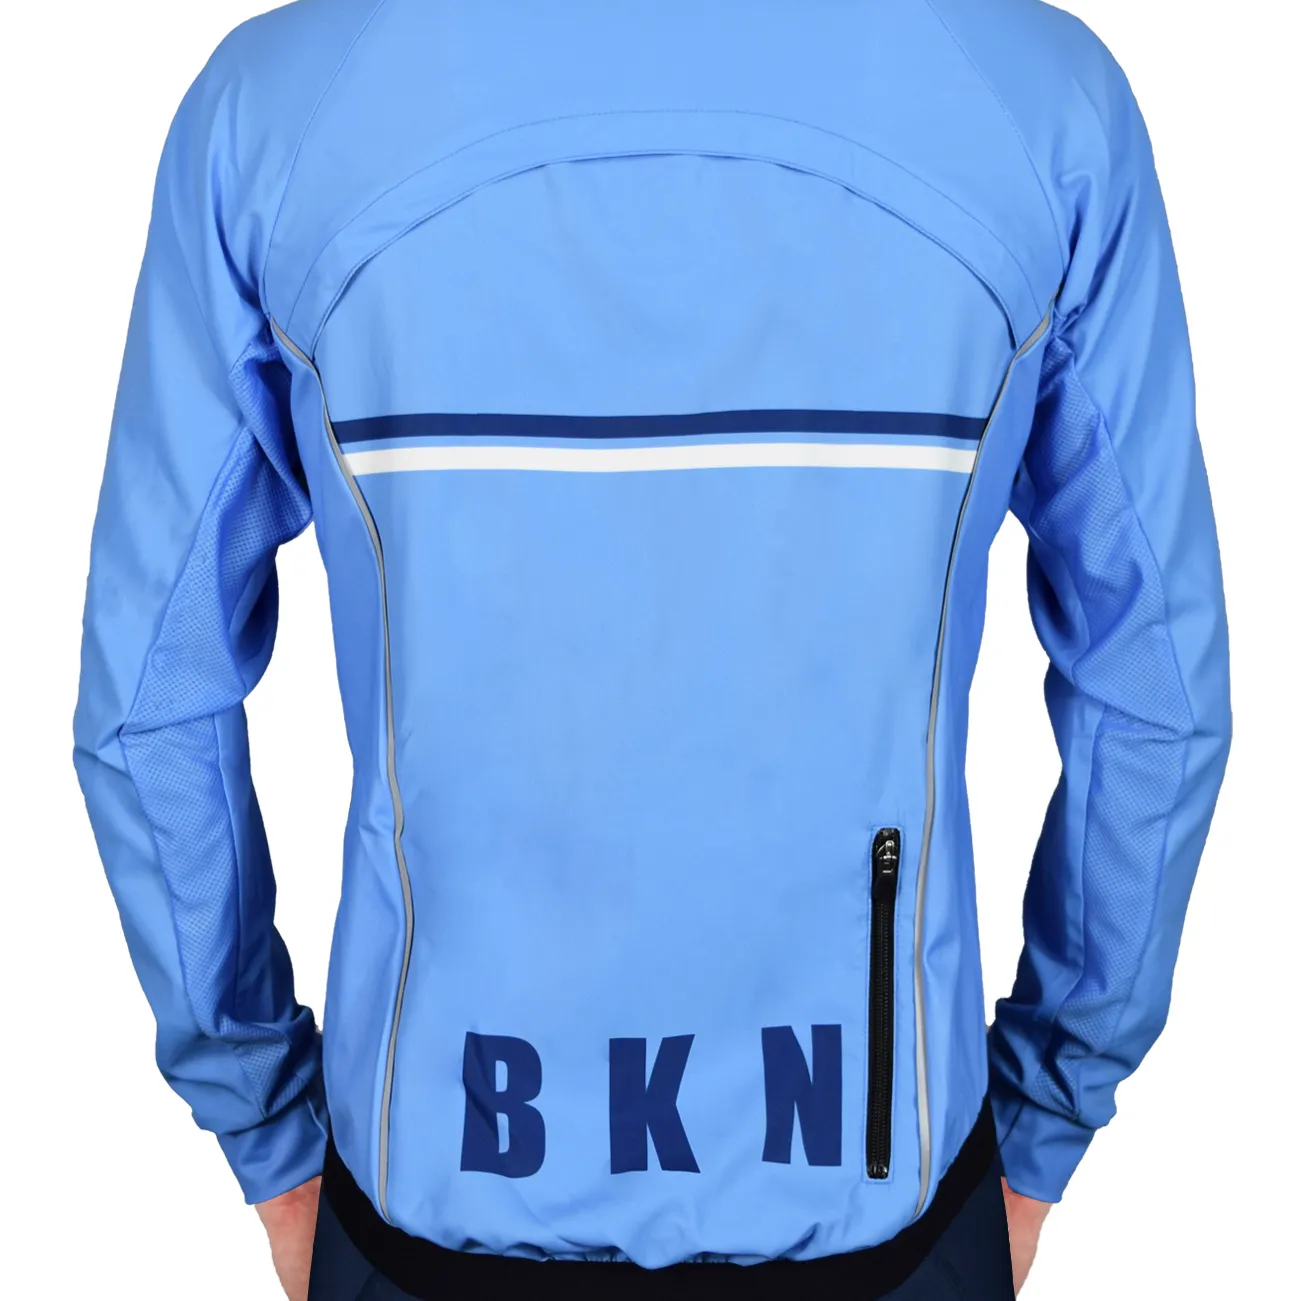 BKN Lt Blue Jacket BACK